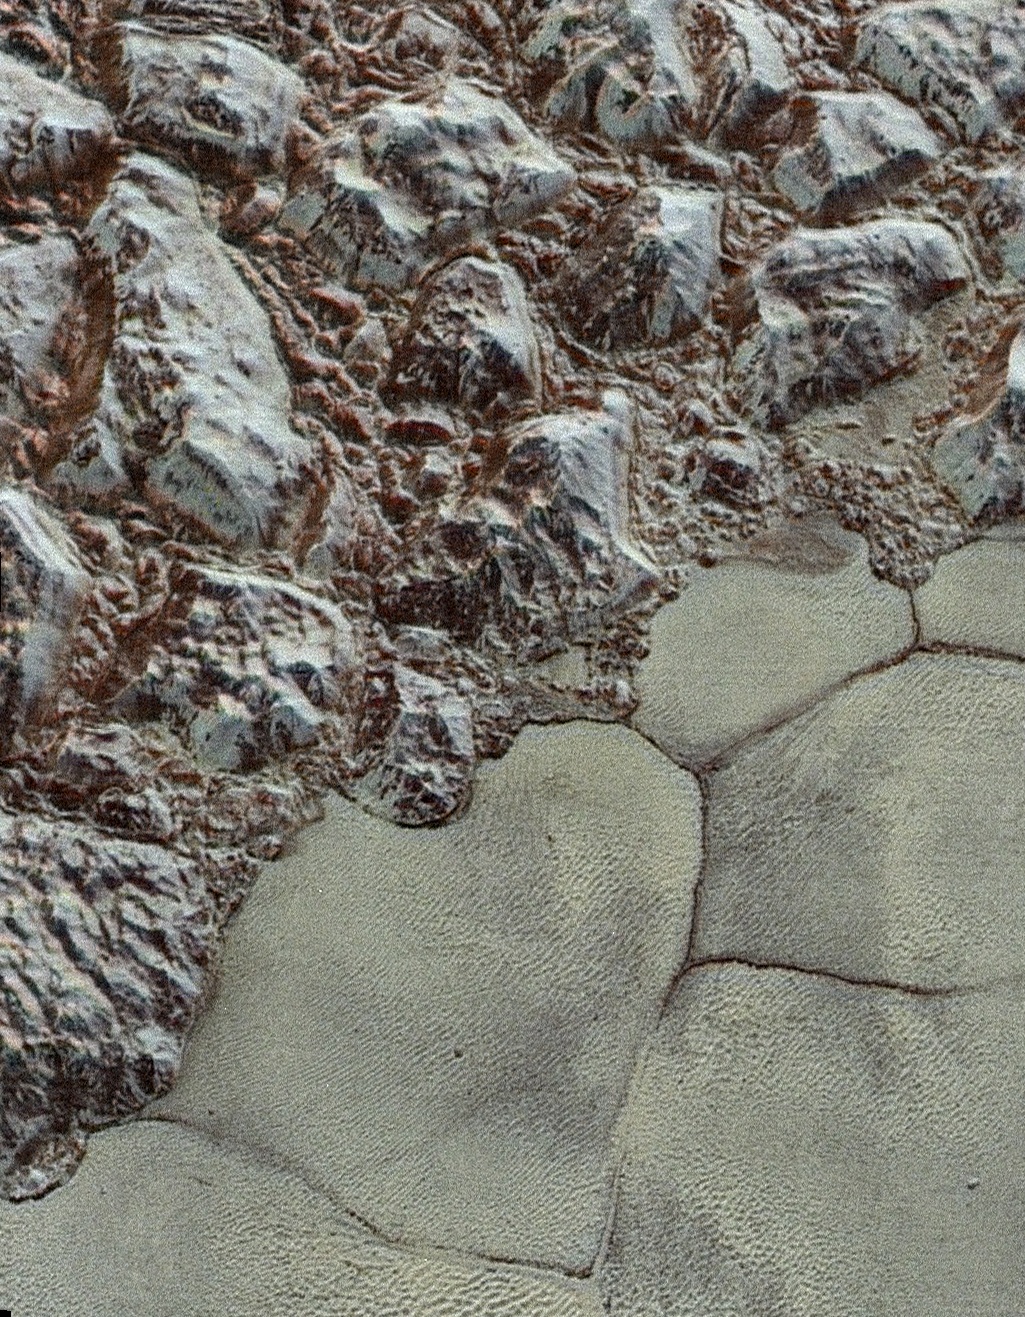 Първите цветни и детайлни снимки на Плутон